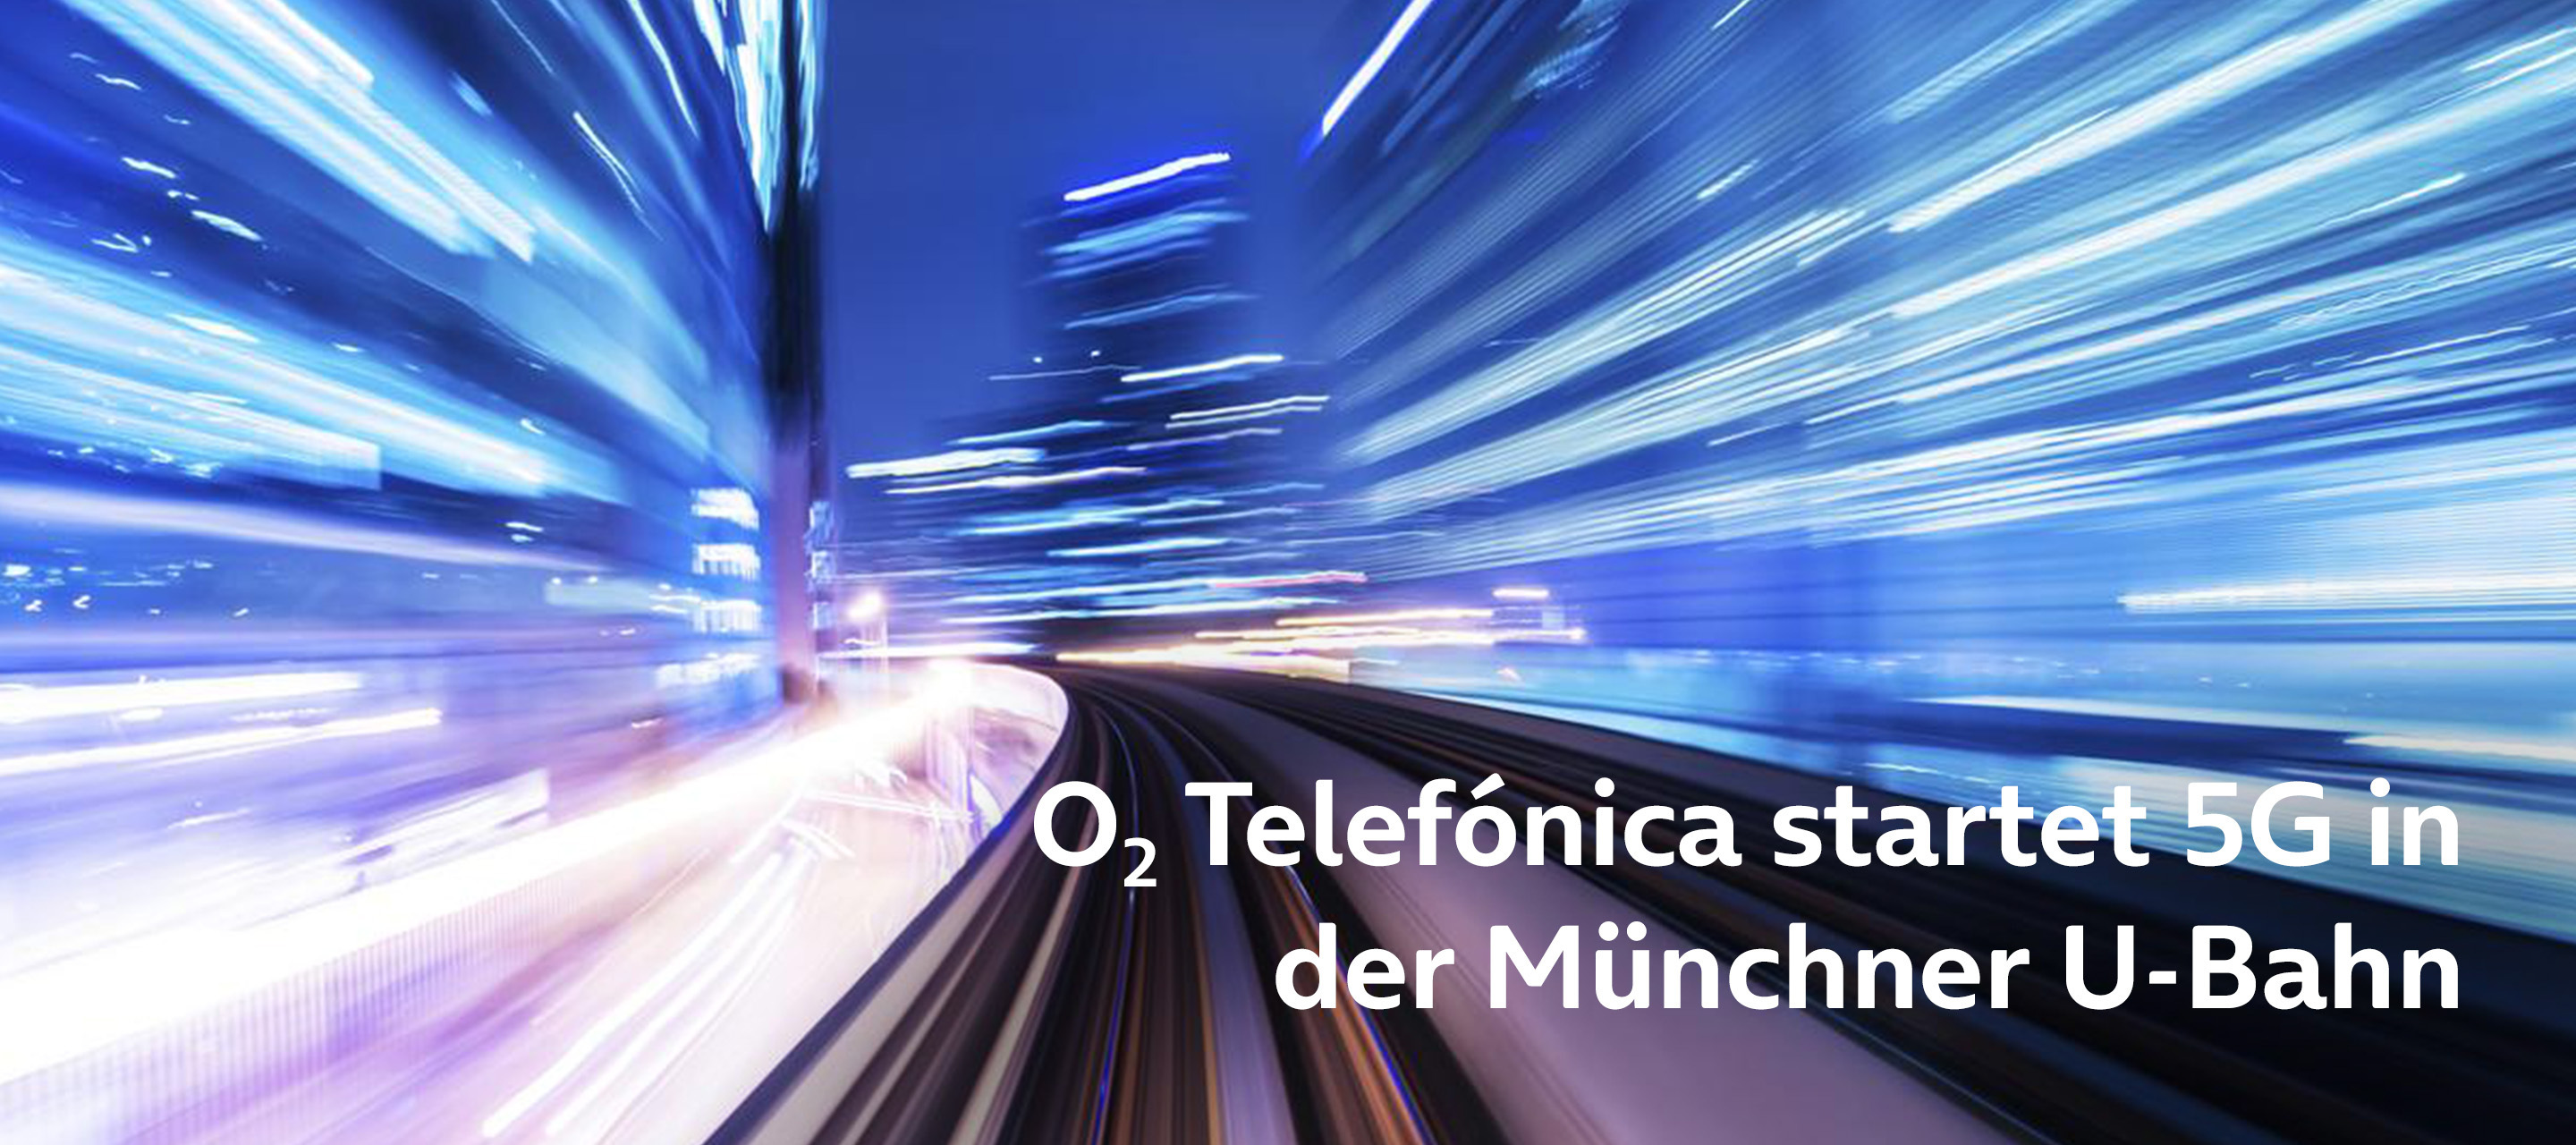 O₂ startet 5G in der Münchner U-Bahn